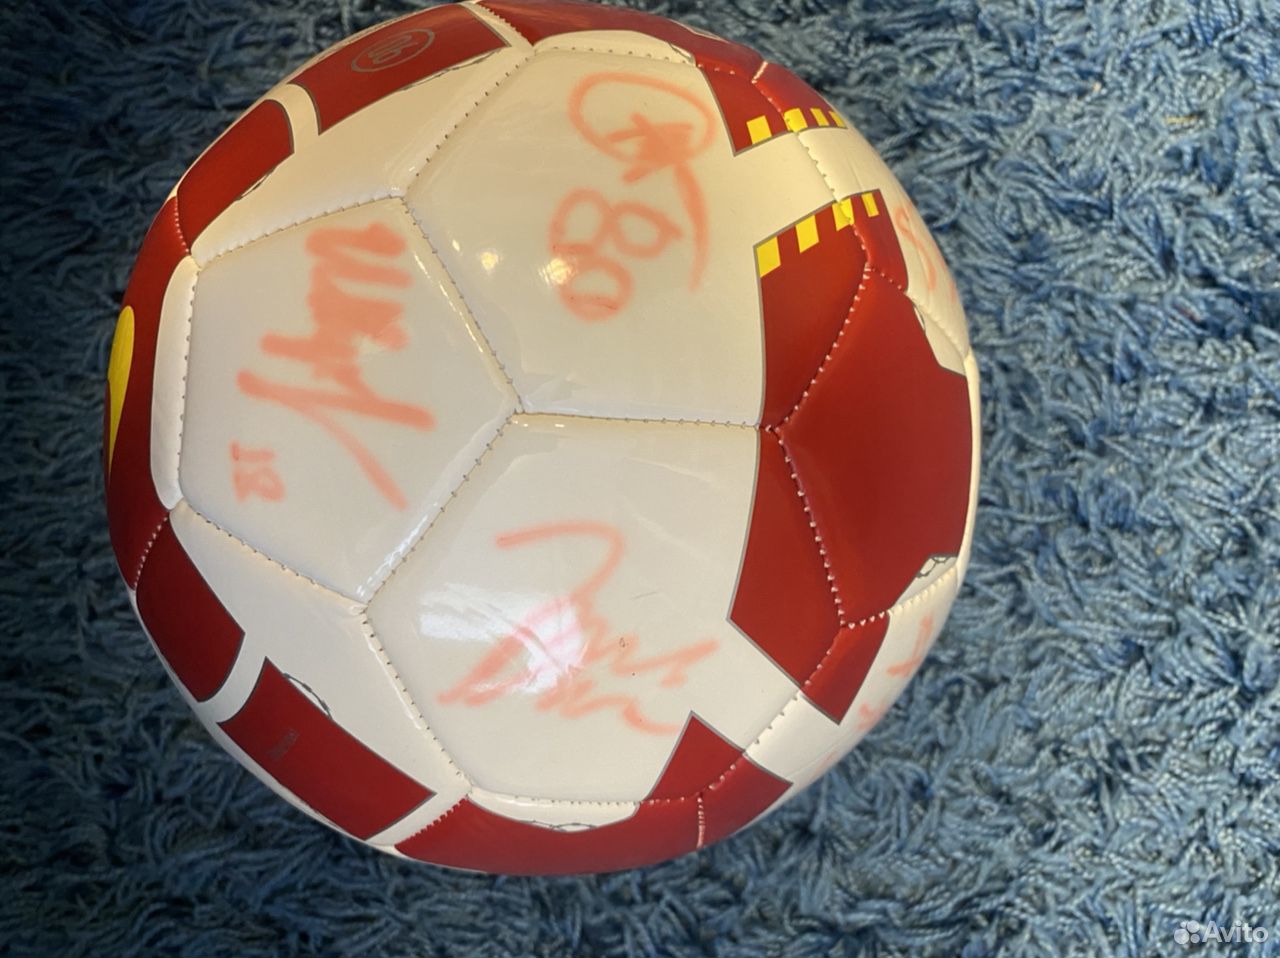  Футбольный мяч с автографами  89159998580 купить 2